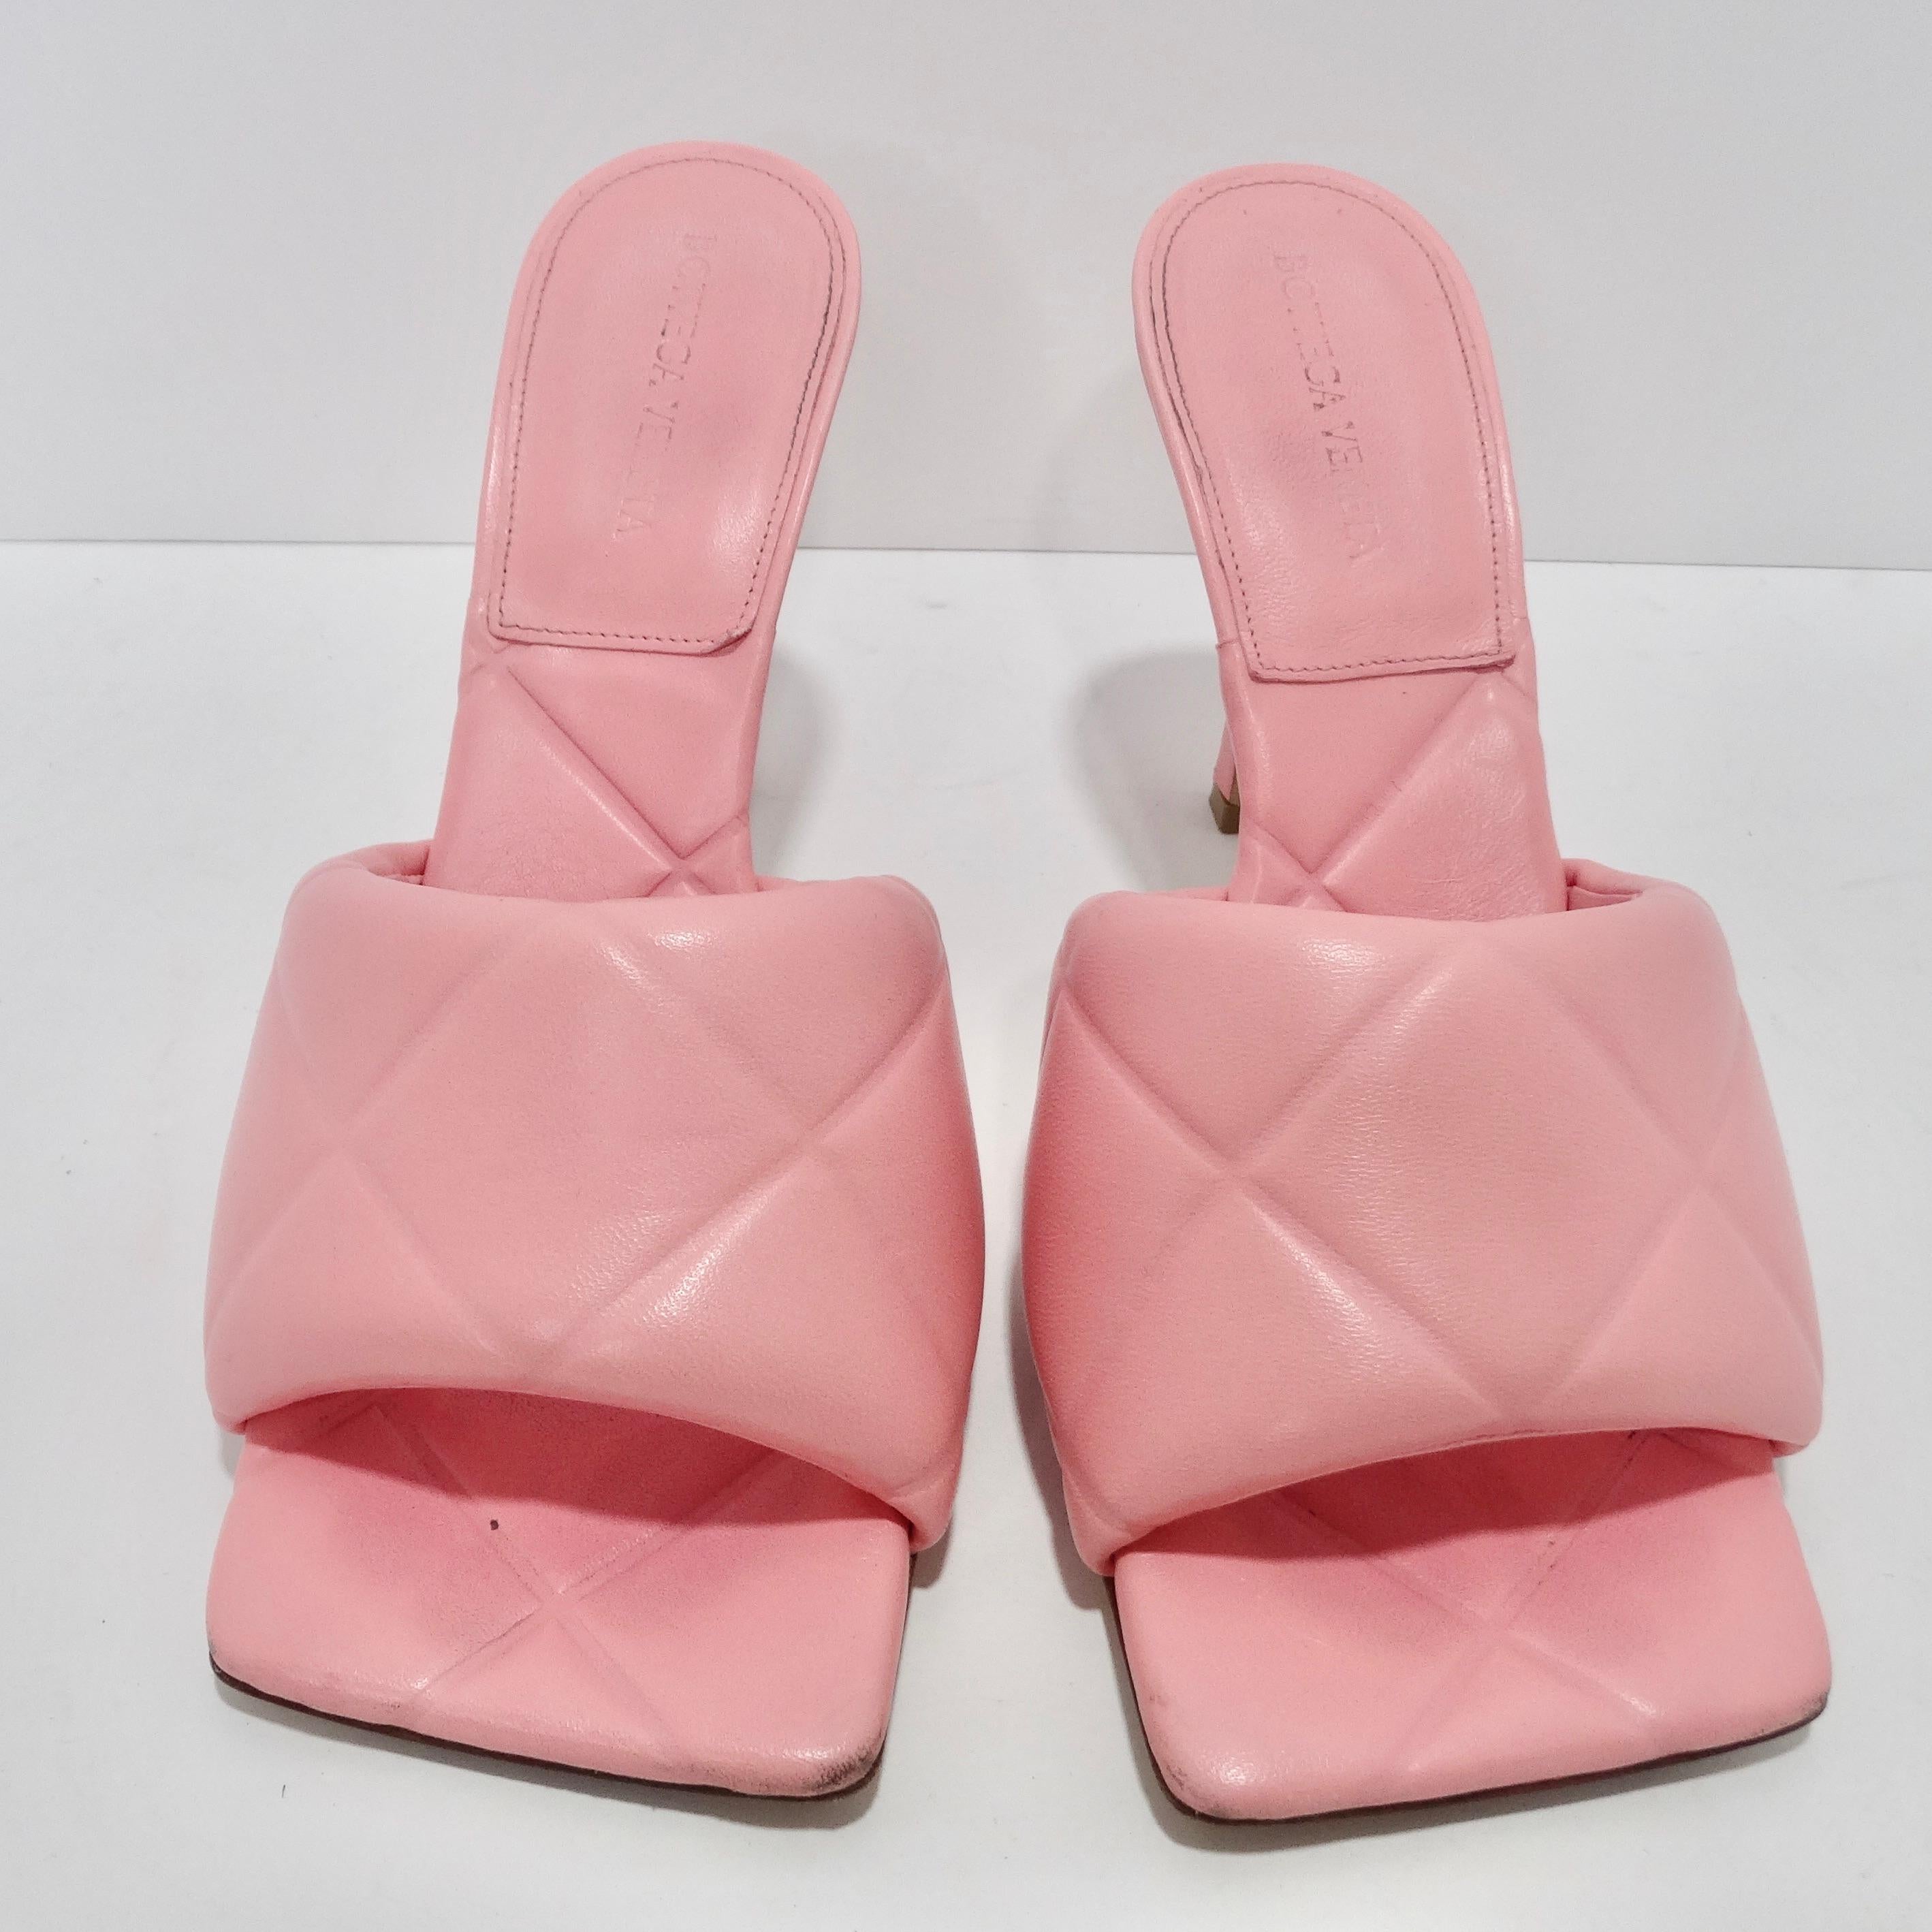 Élevez votre style avec les sandales Lido roses de Bottega Veneta - un véritable témoignage de l'esthétique emblématique de Bottega Veneta réimaginée avec une touche de modernité. Ces sandales sont l'incarnation du luxe contemporain dans une teinte